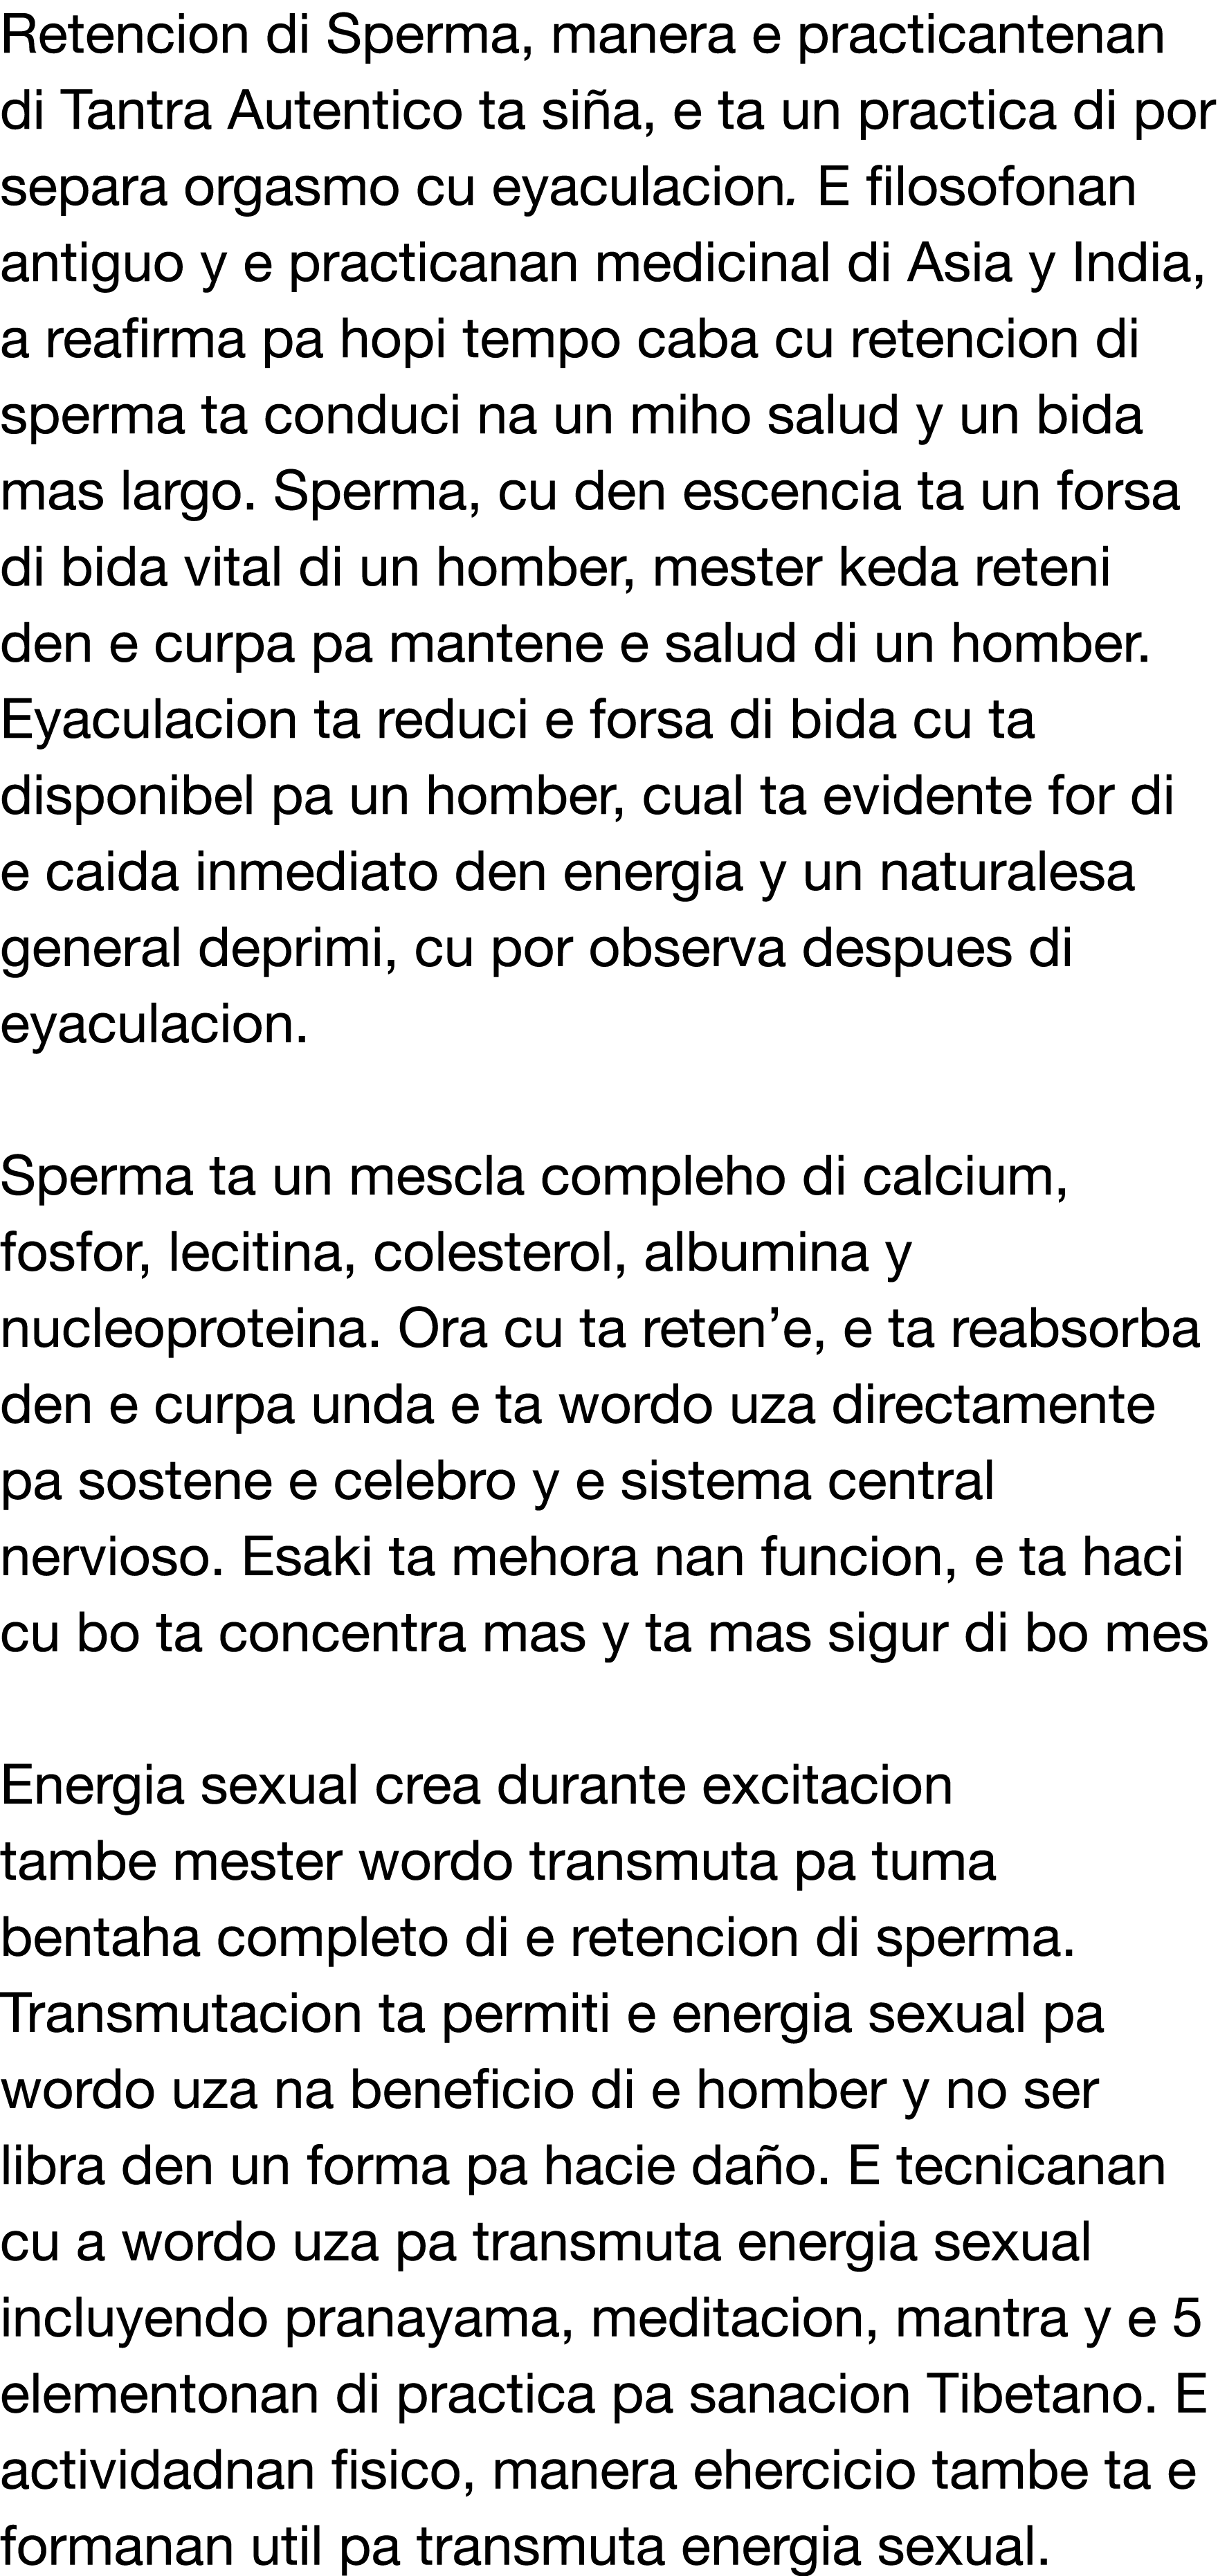 Retencion di Sperma, manera e practicantenan di Tantra Autentico ta siña, e ta un practica di por separa orgasmo cu e   